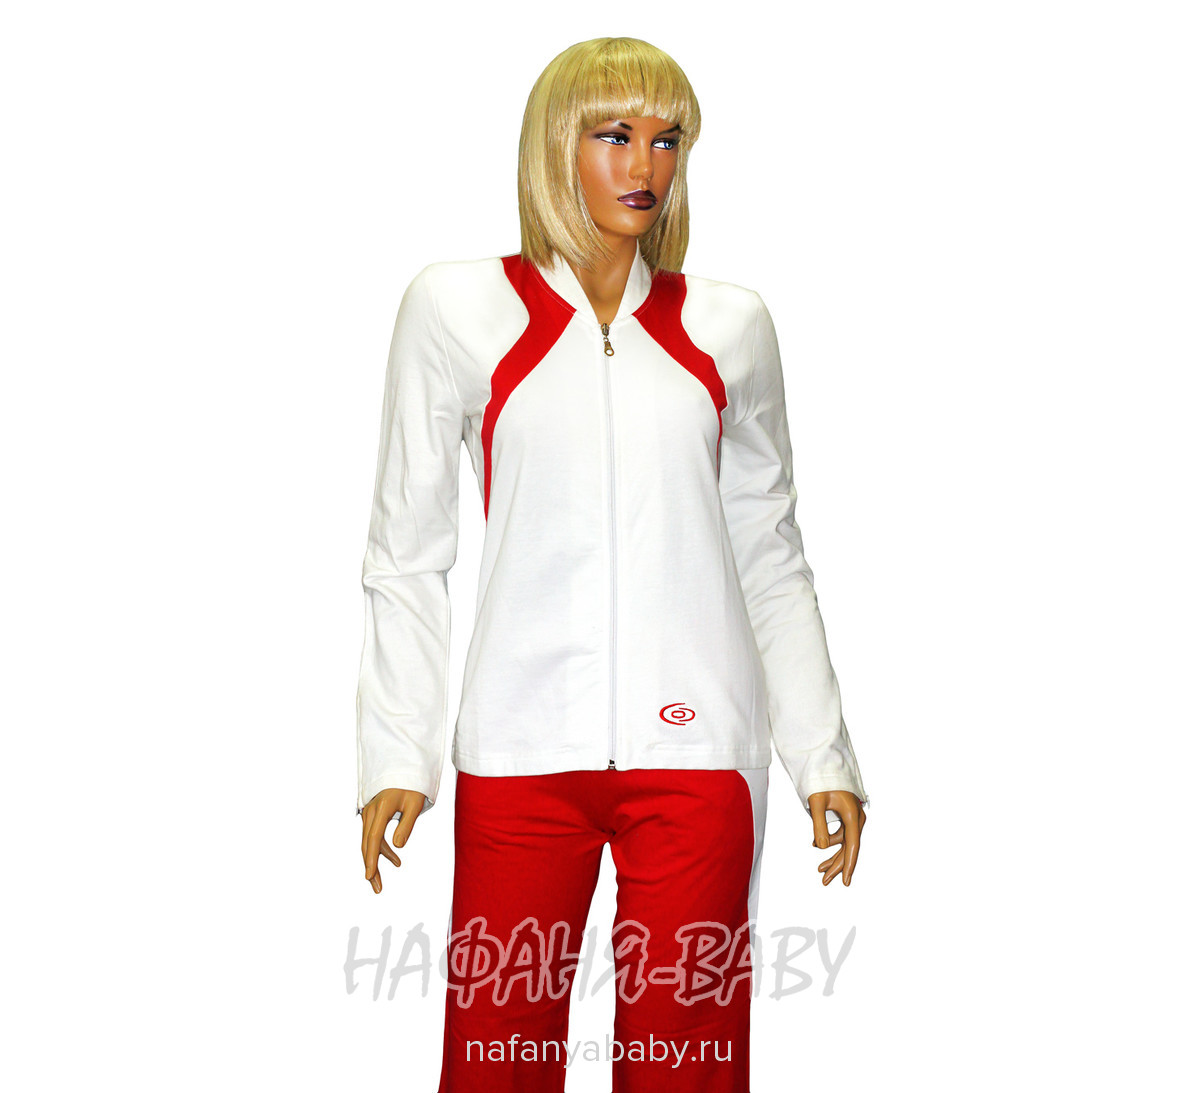 Трикотажный спортивный костюм COCOON, купить в интернет магазине Нафаня. арт: 1203.